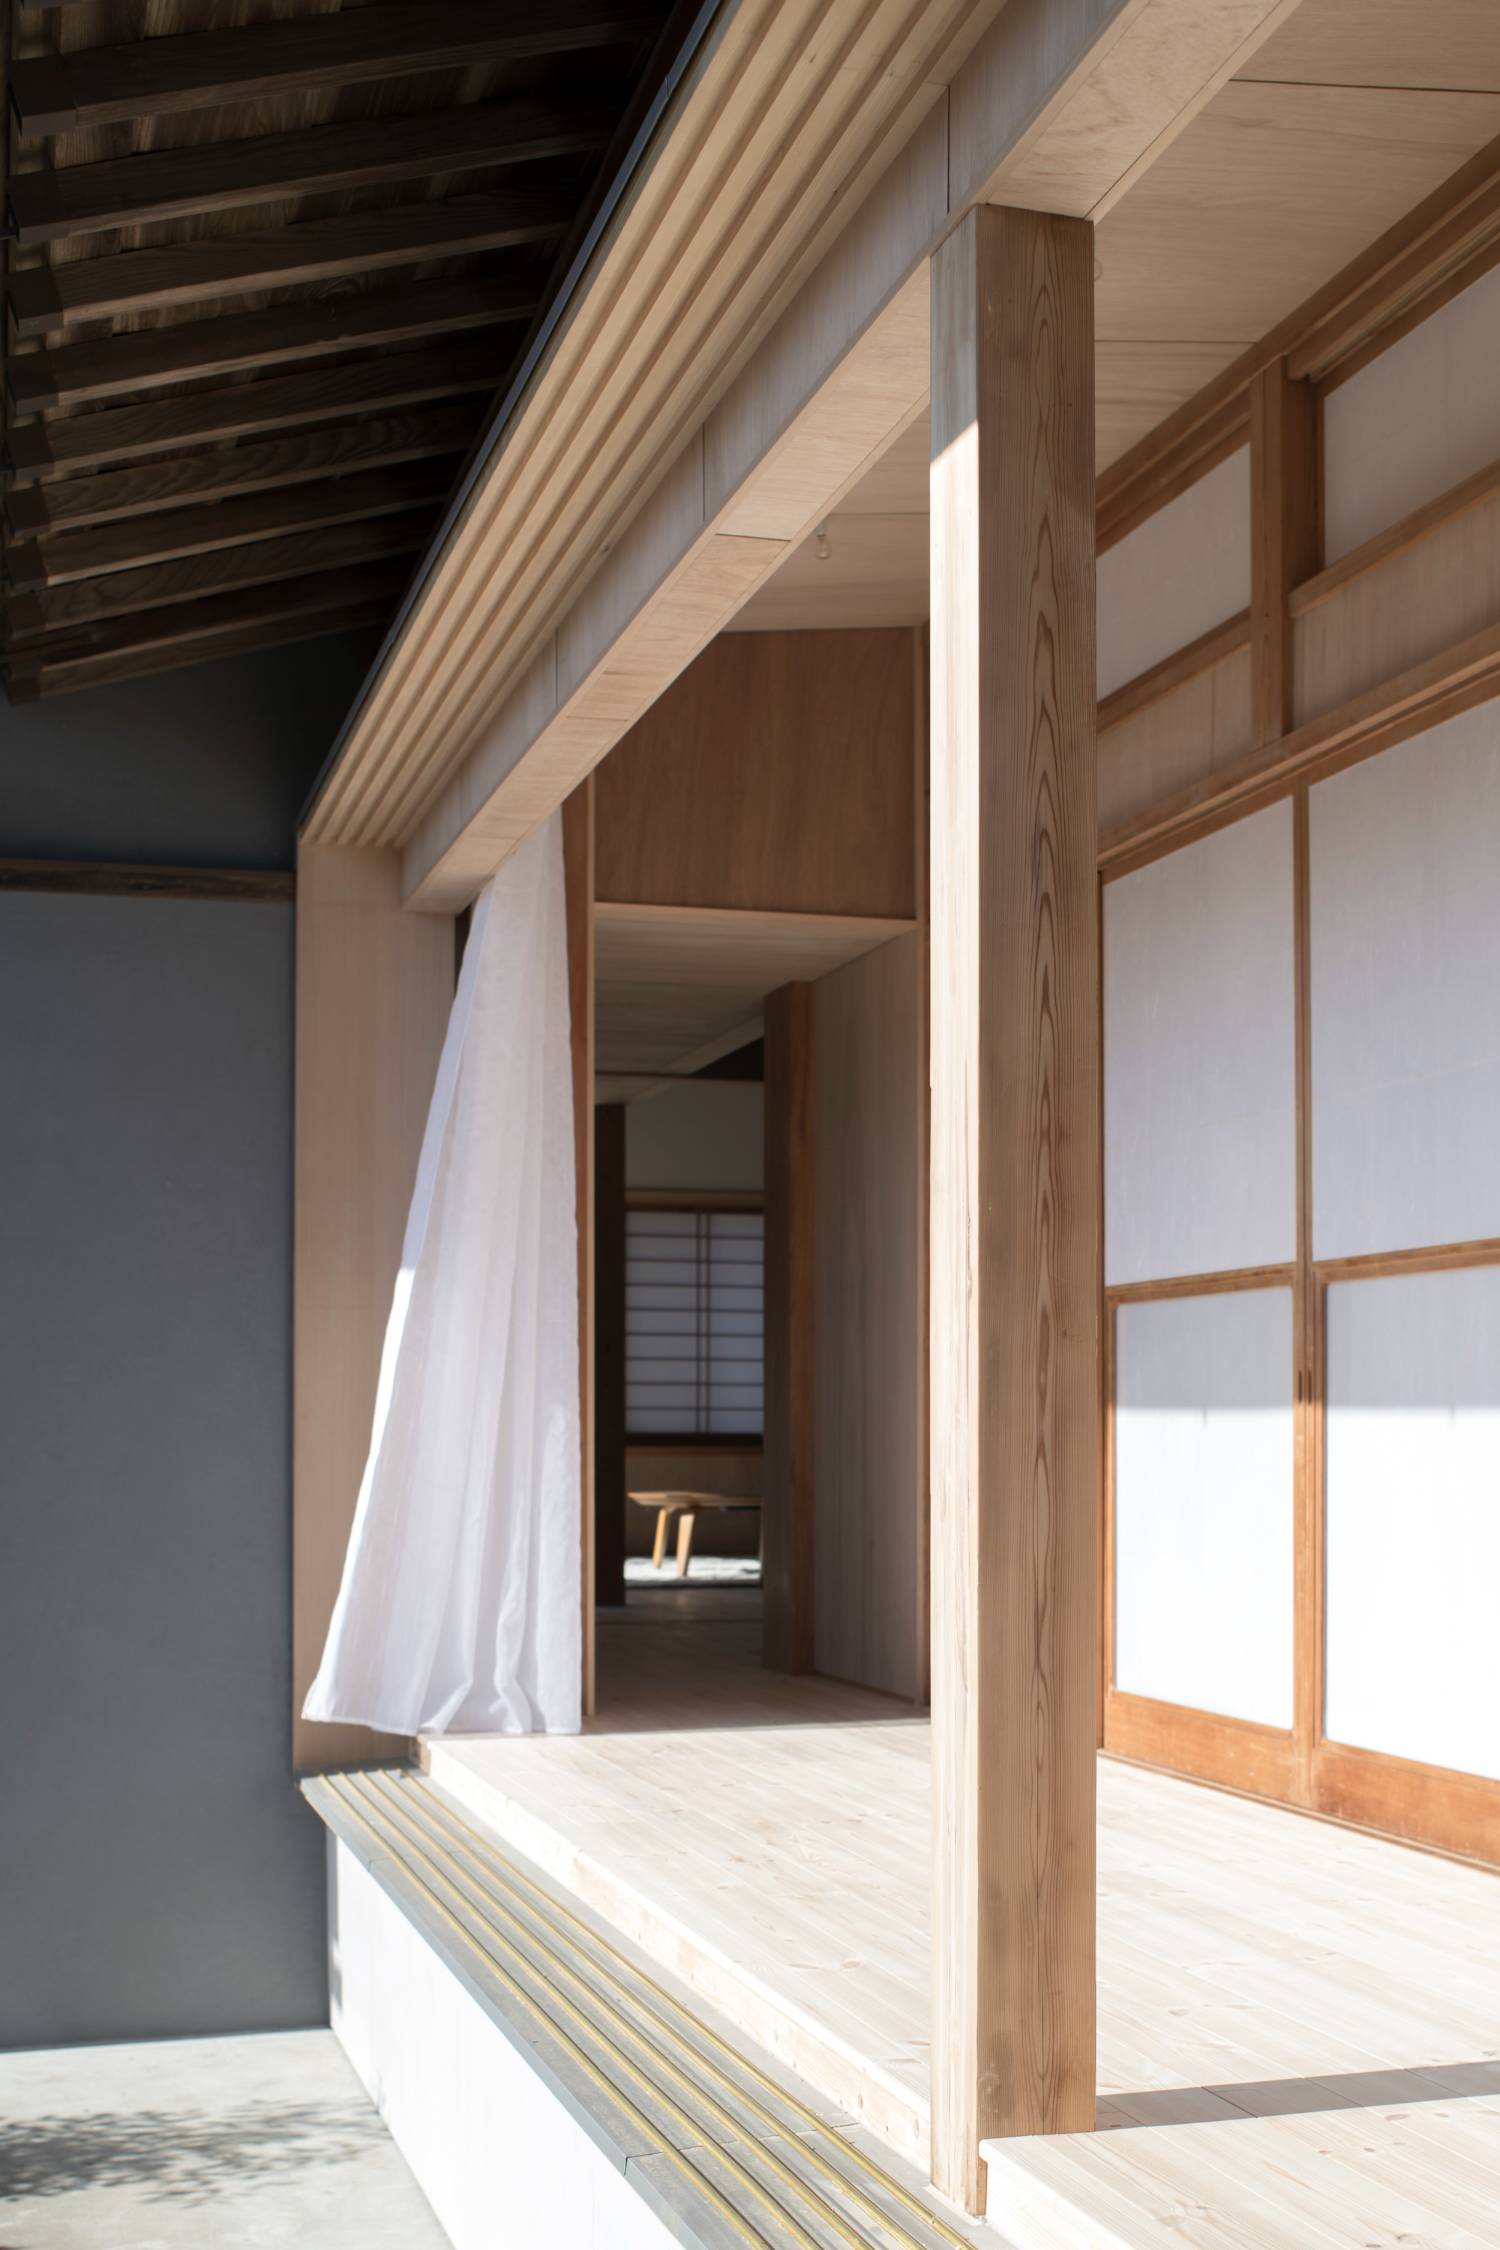 An Old Japanese House Renovation in Sakura by Naoyuki Tokuda